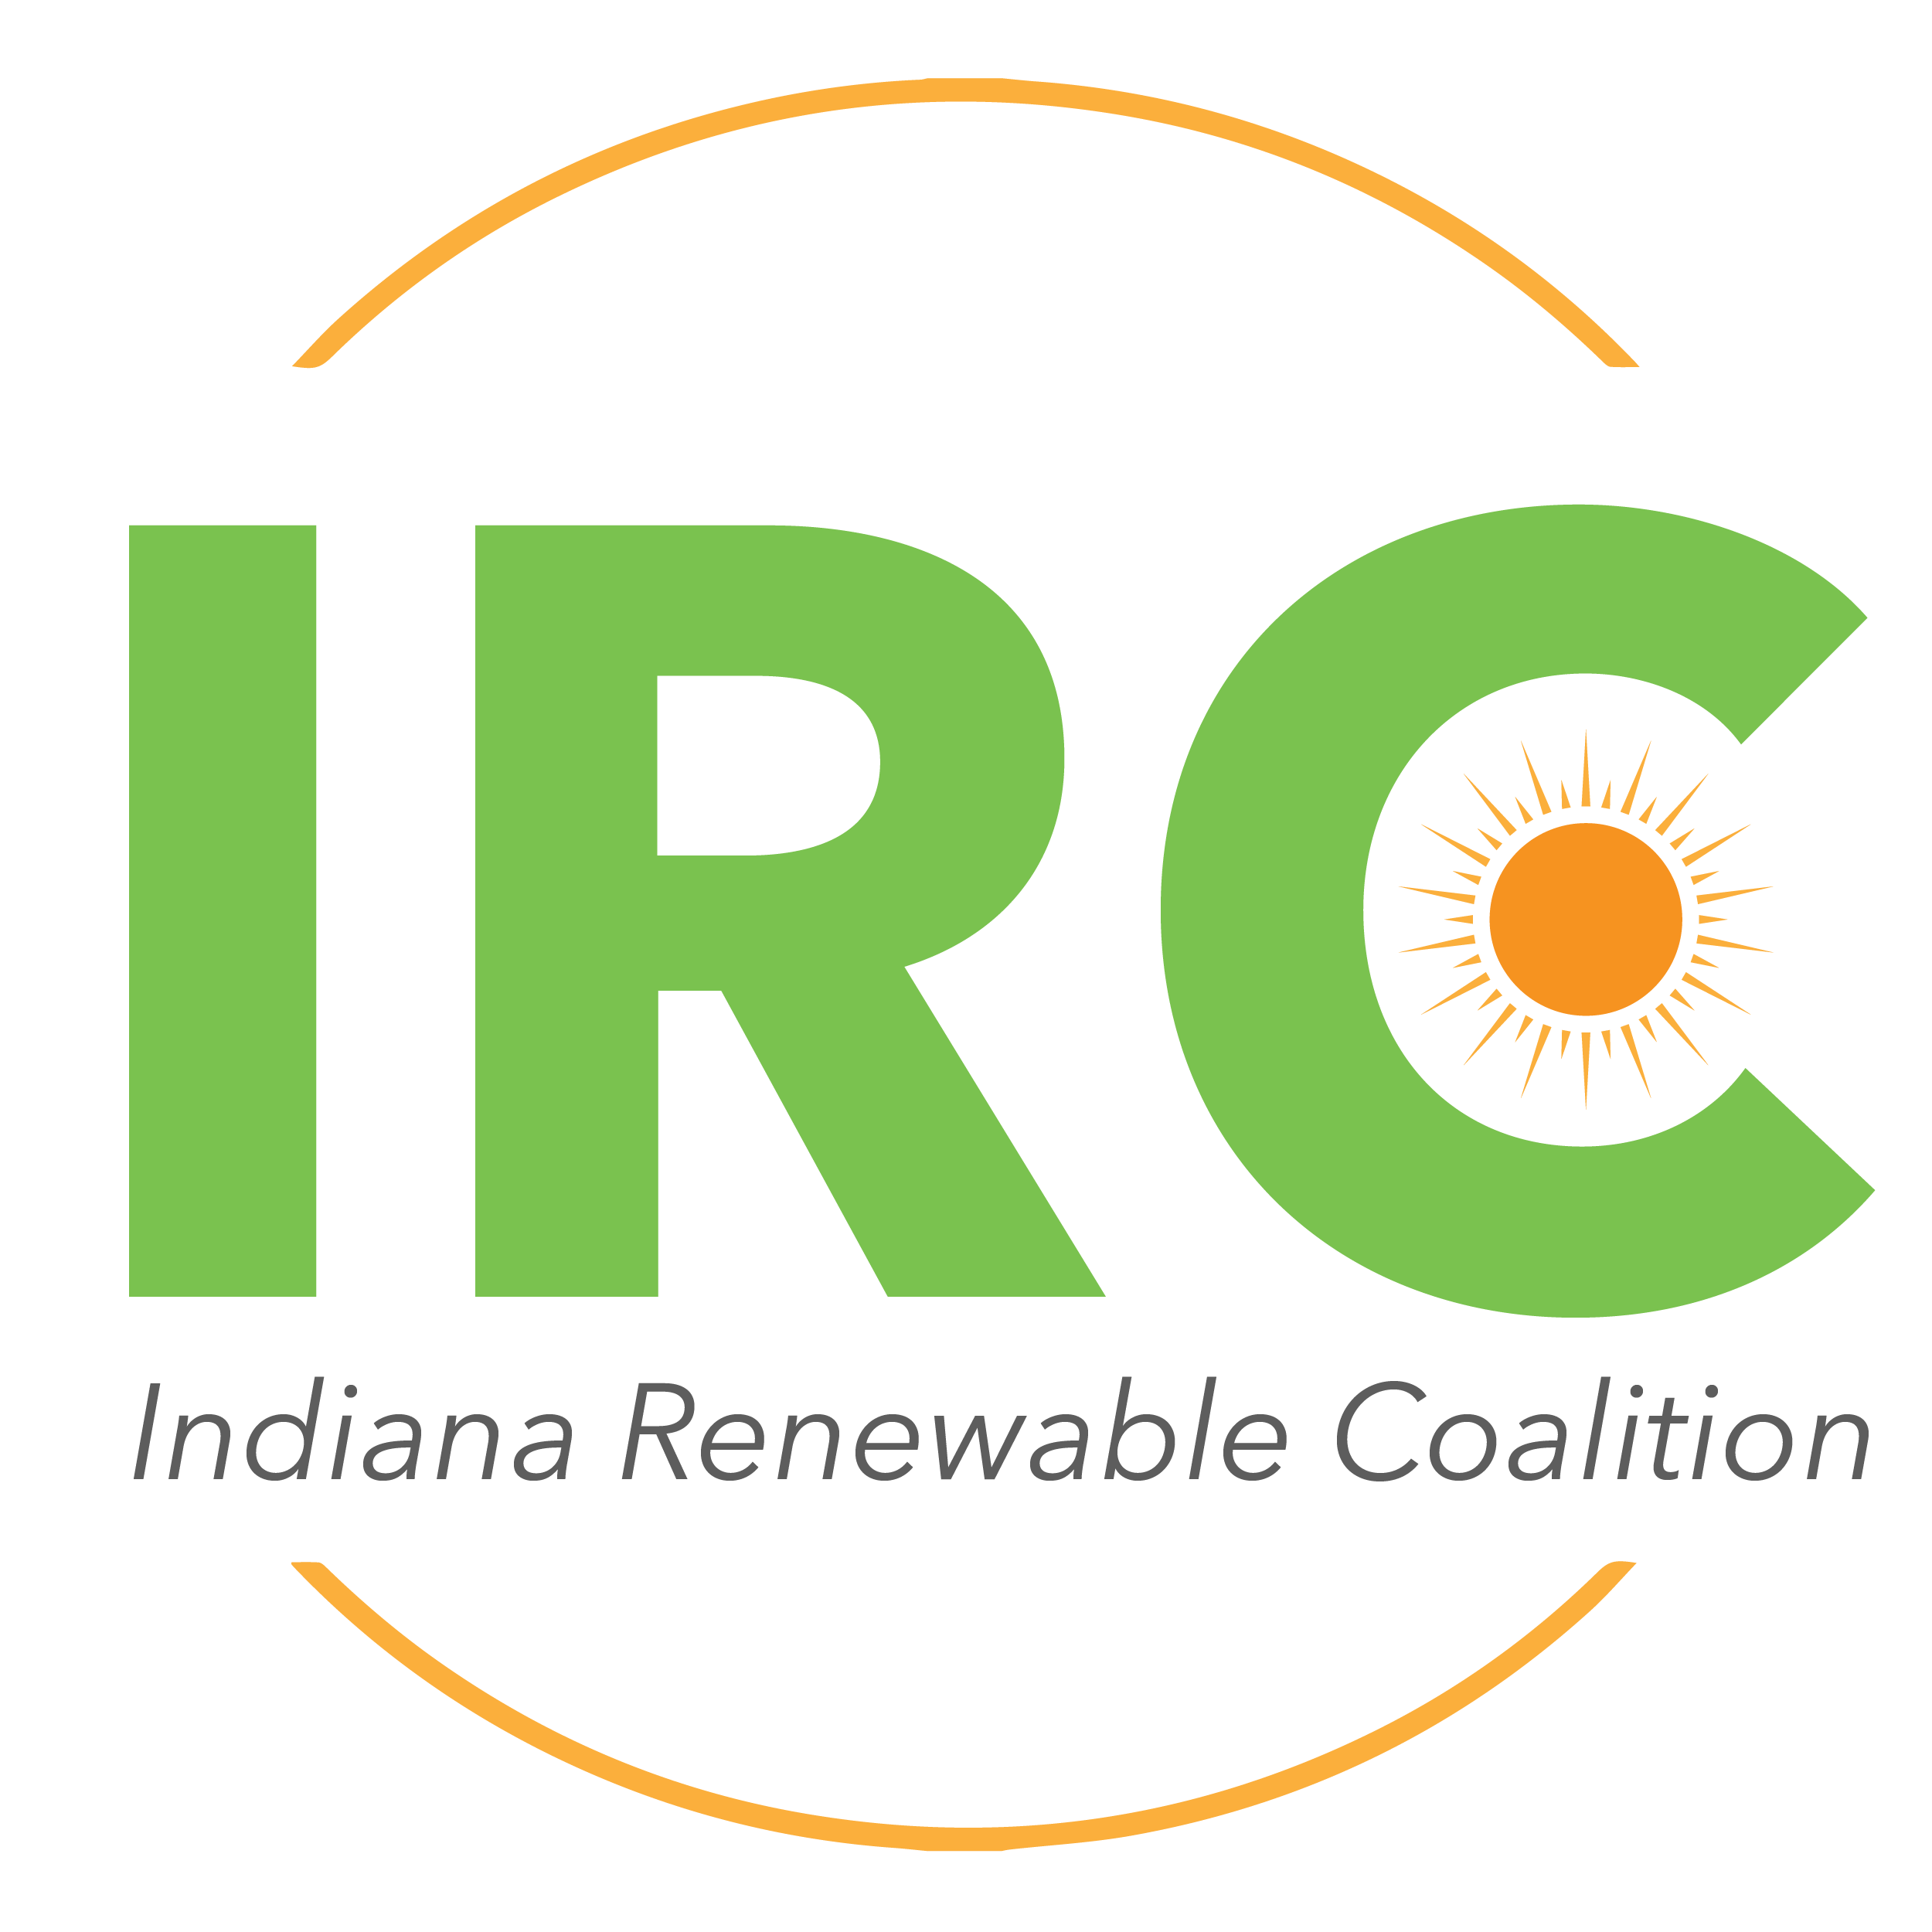 Indiana Renewable Coalition